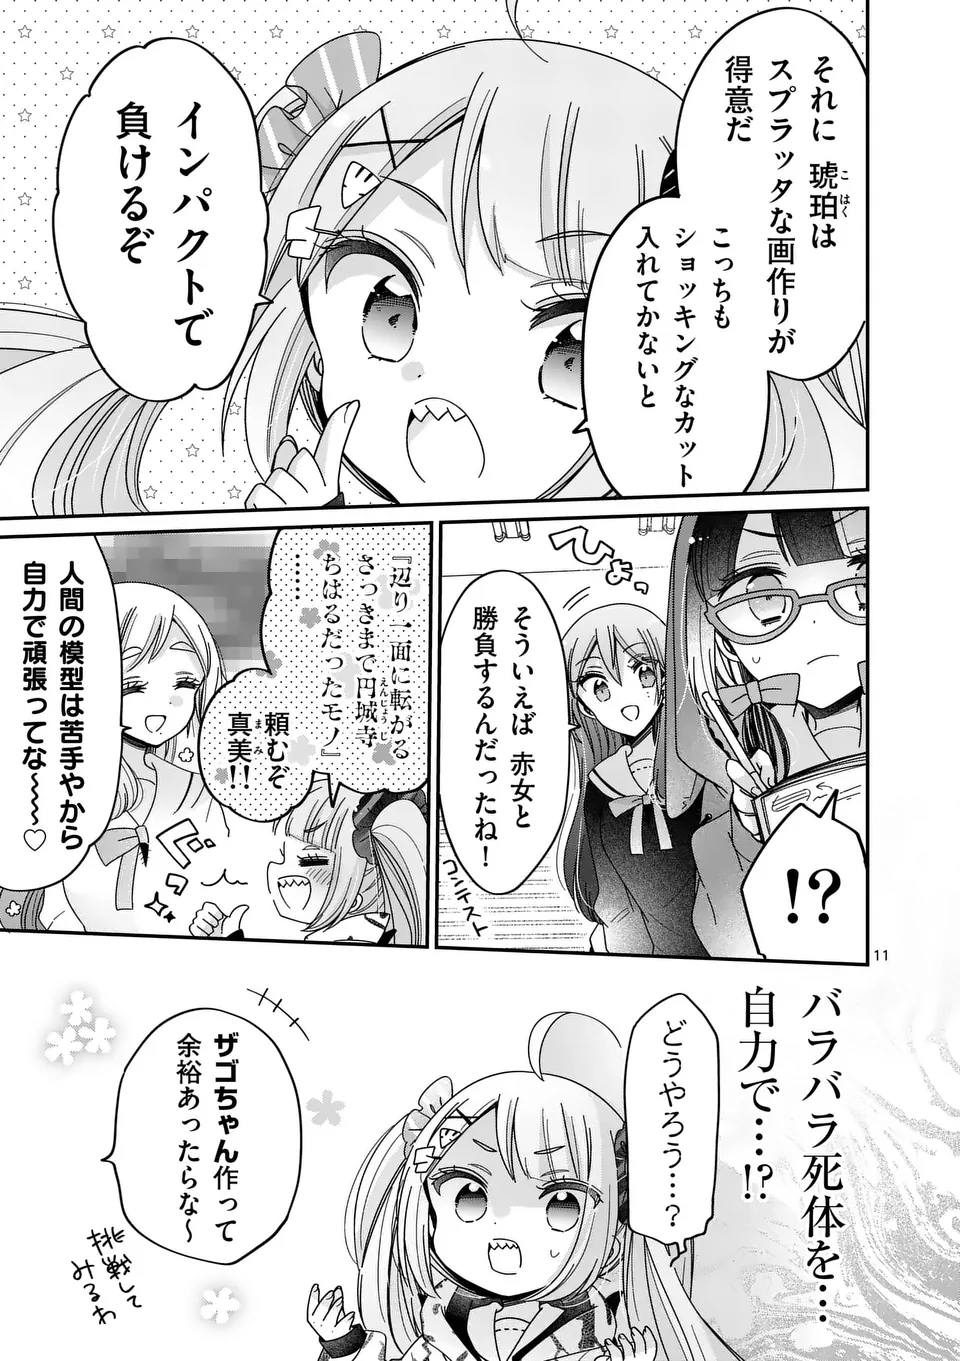 Kimi Toku!! – Kimi ni mo Tokusatsu Eiga ga Toreru!! - Chapter 27 - Page 11